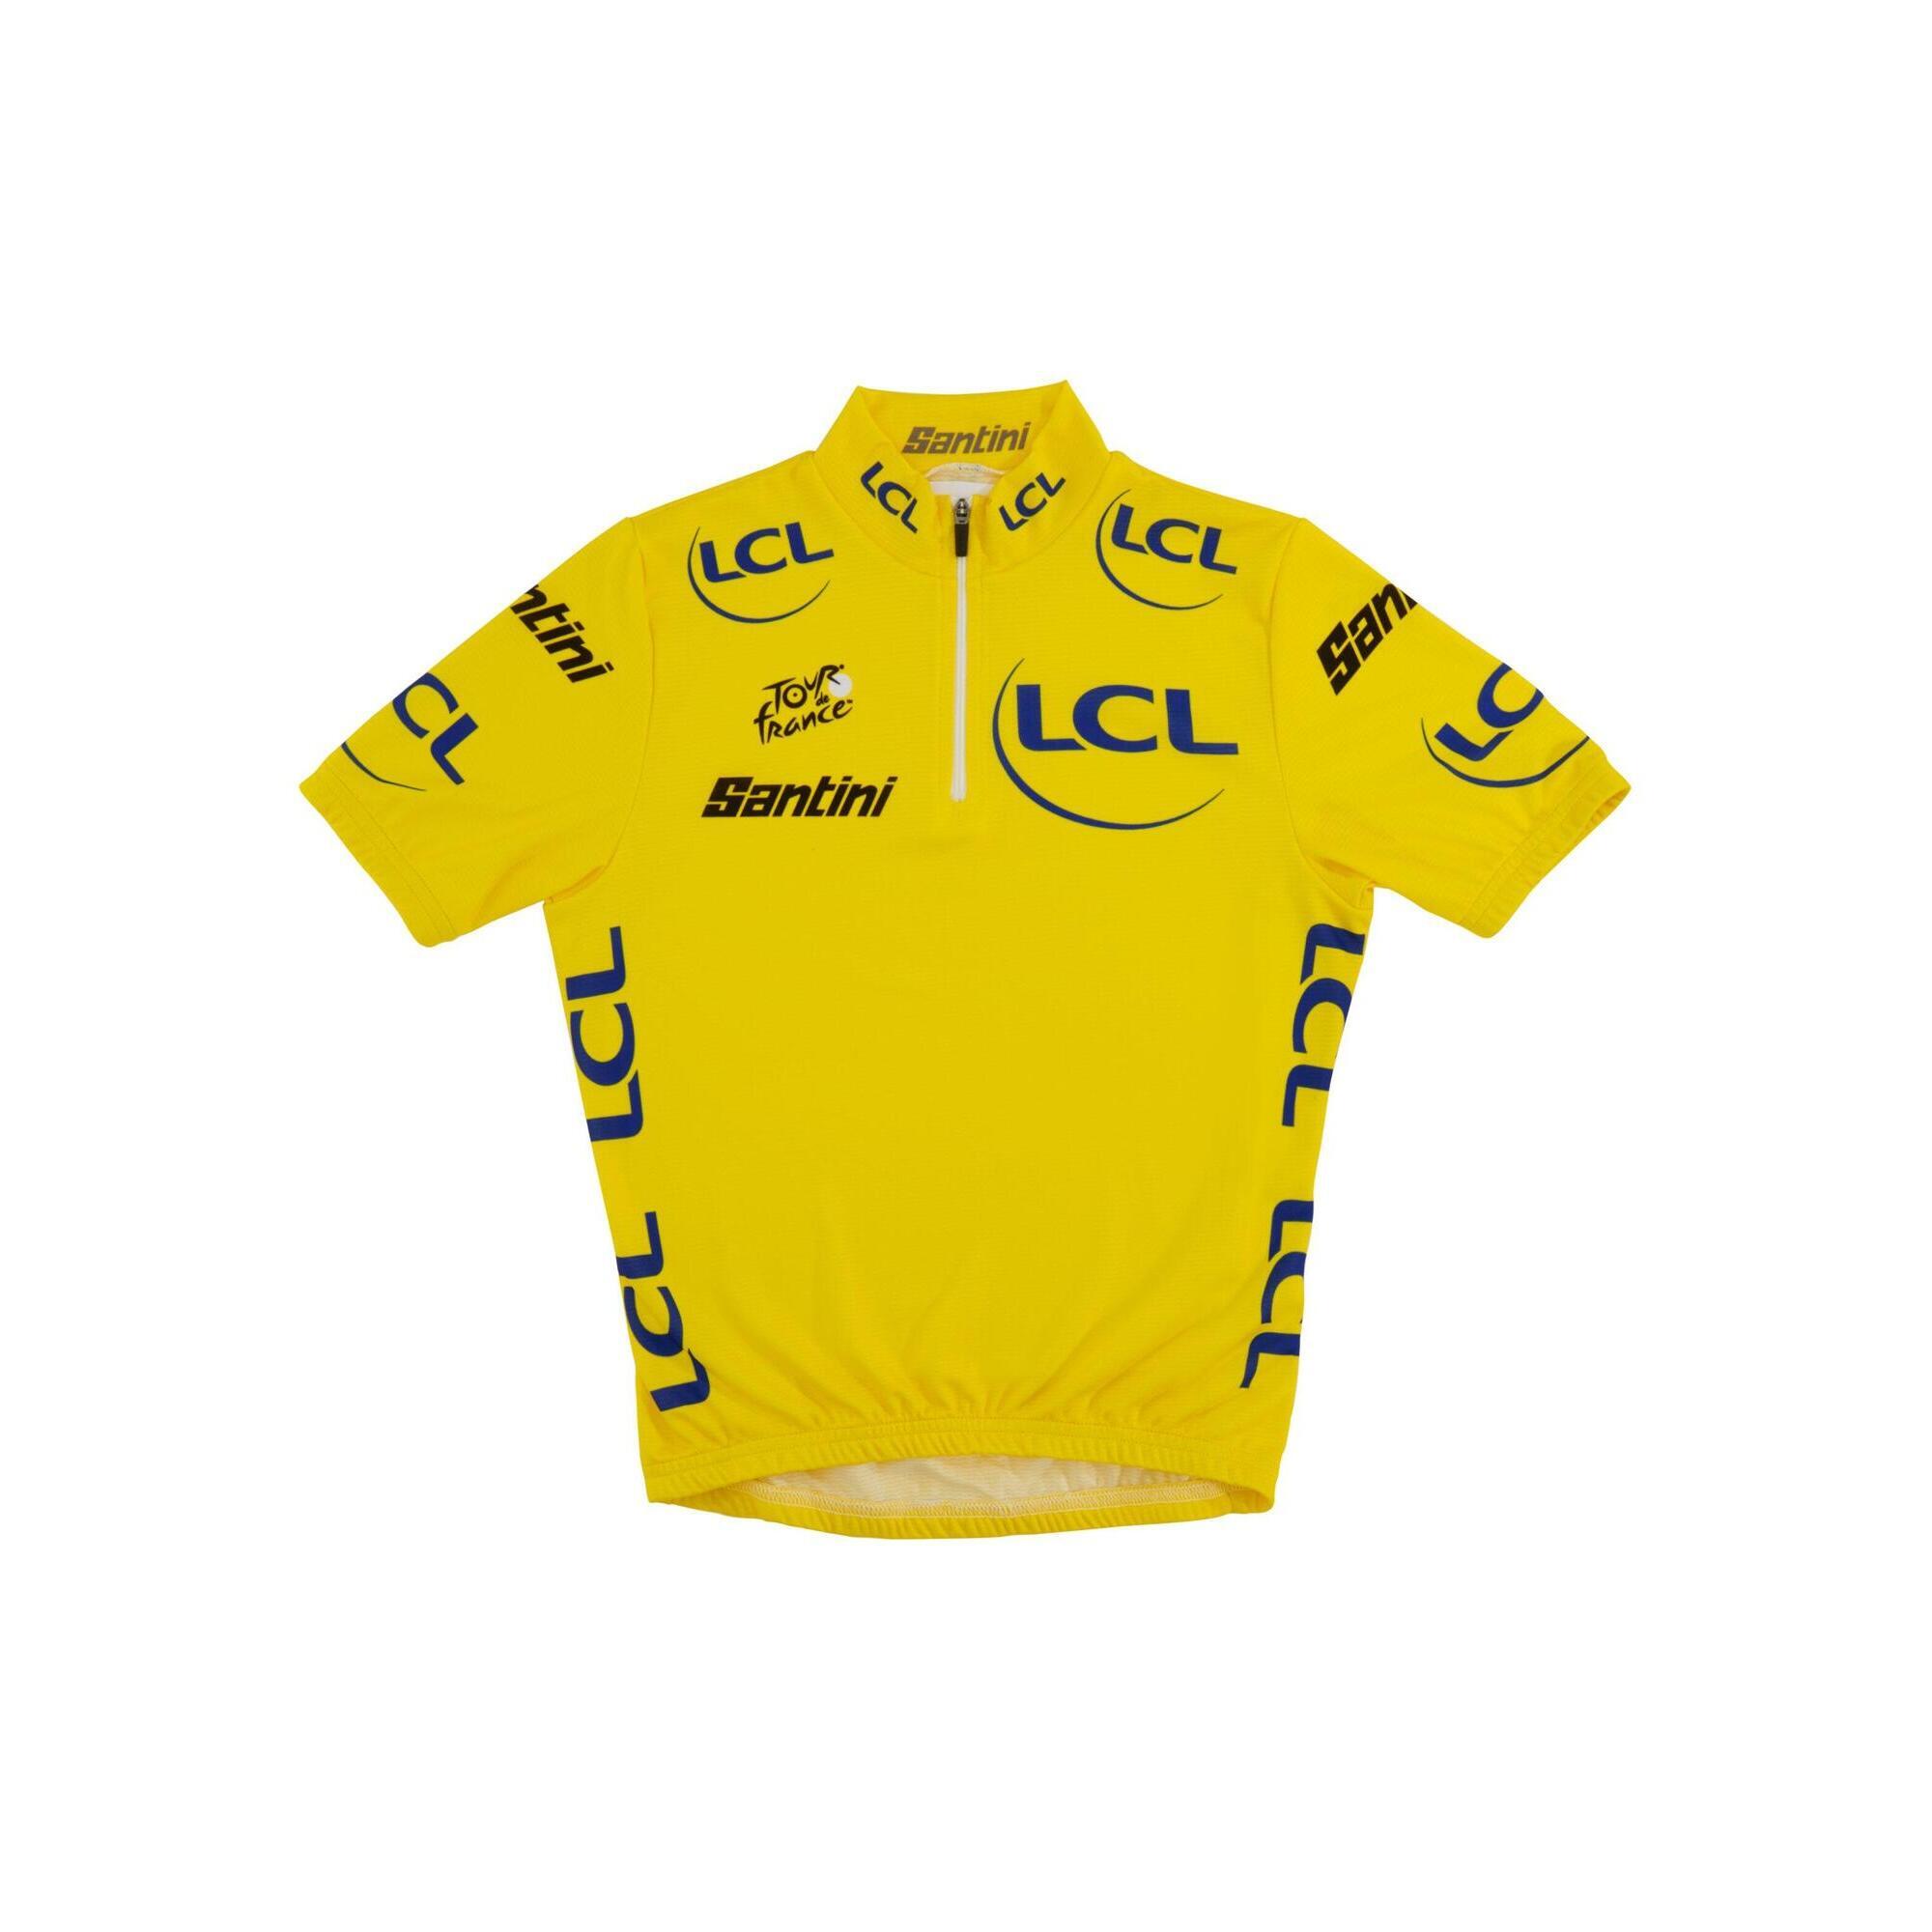 Decathlon | Maglia Gialla Santini Ciclismo Tour de France Bambino Junior |  Santini